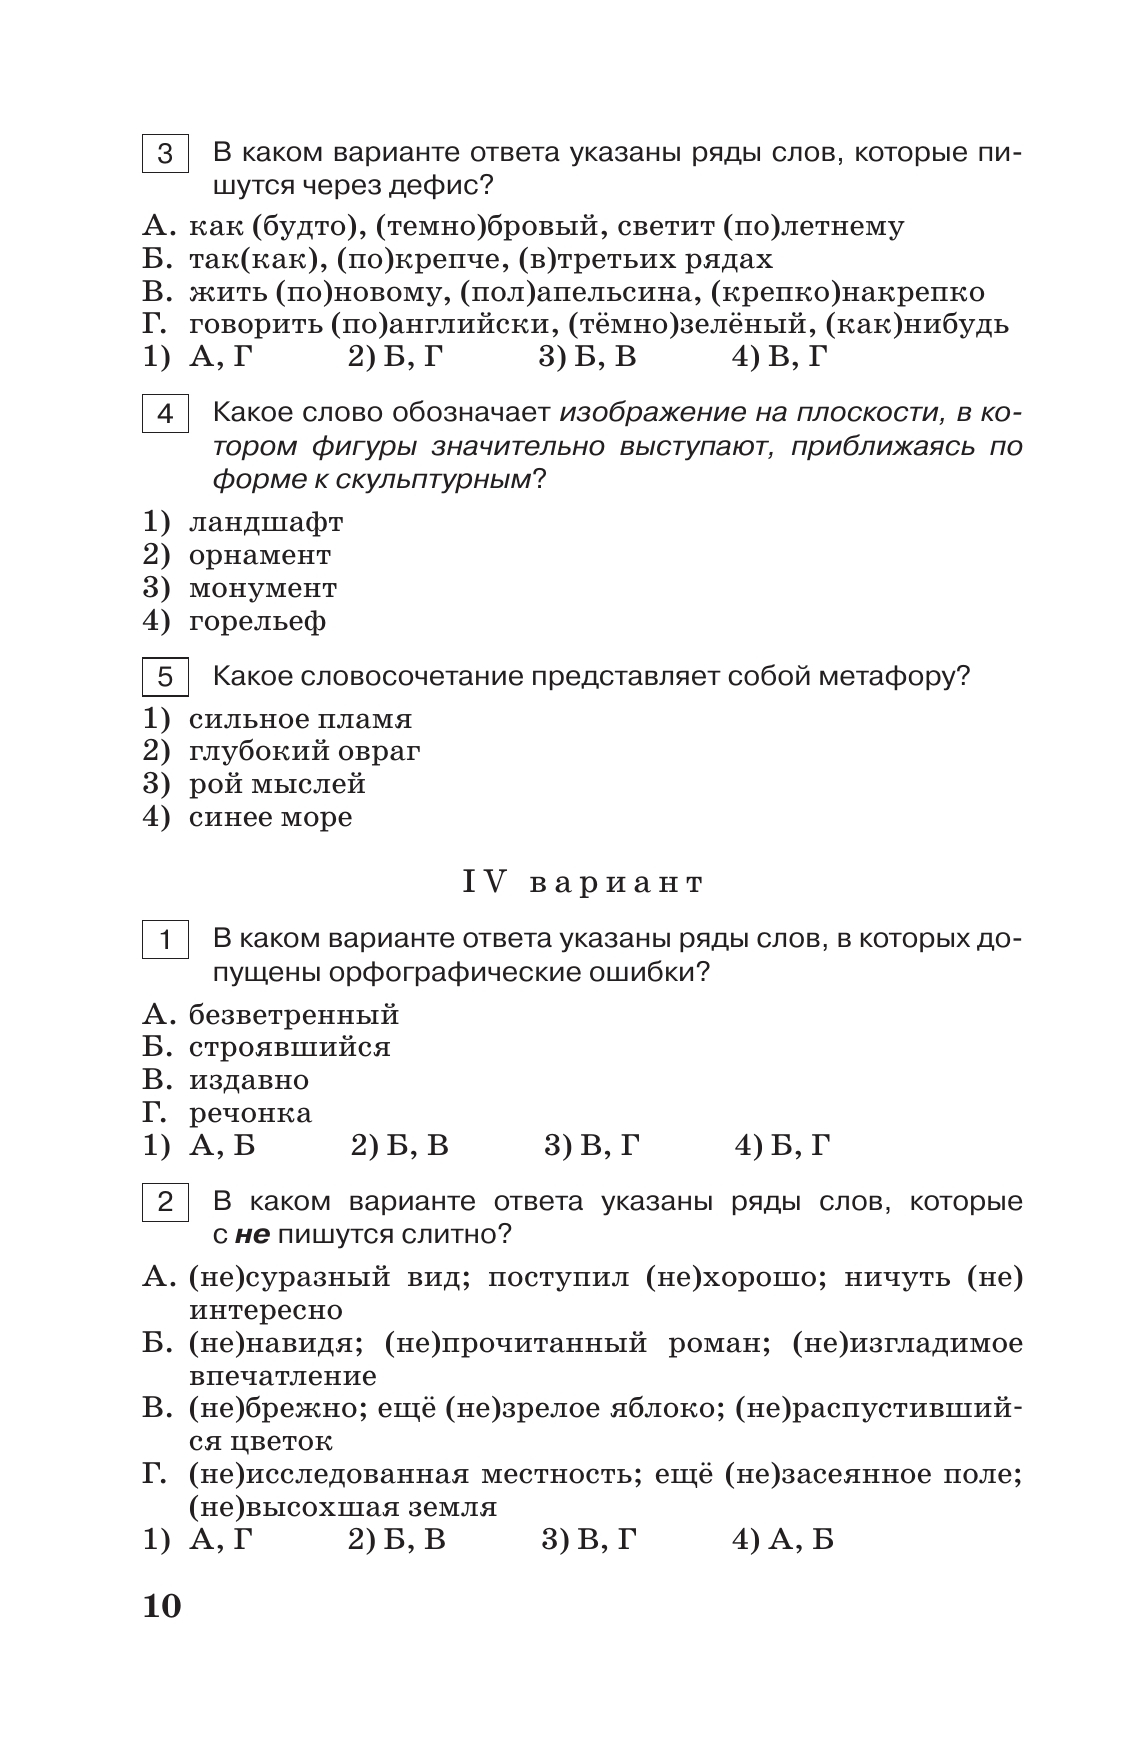 Тестовые задания по русскому языку. 8 класс. 6